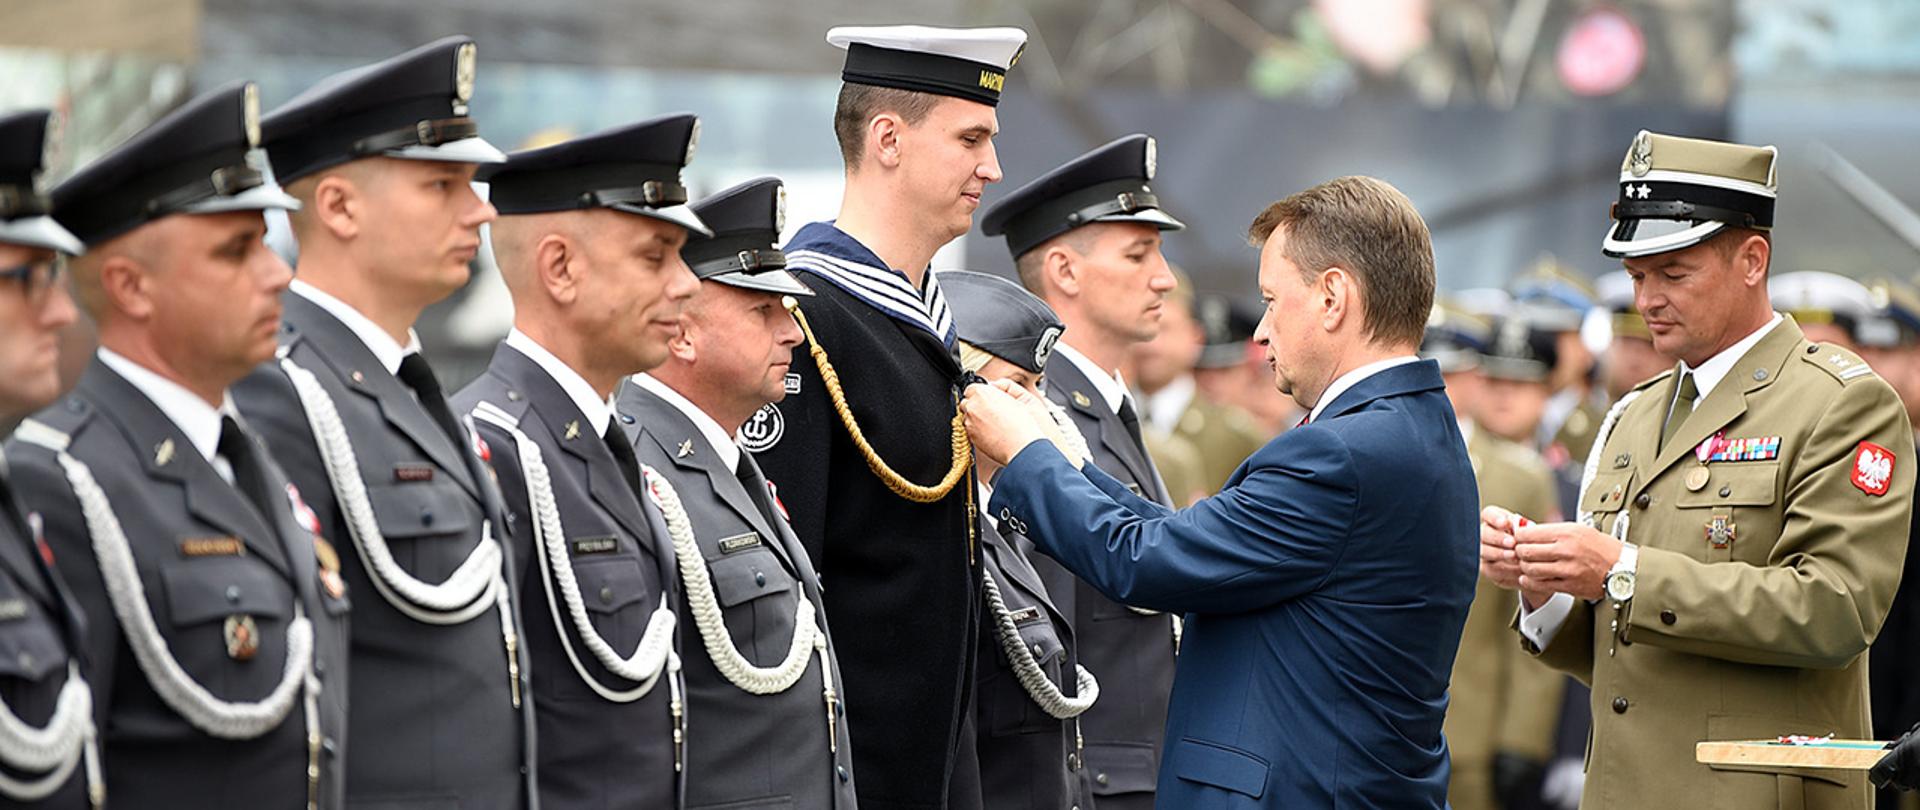 W środę, w przeddzień święta Wojska Polskiego szef MON wręczył żołnierzom wyróżnienia i medale - Siły Zbrojne w Służbie Ojczyzny oraz Za Zasługi dla Obronności Kraju. Medalami wyróżnieni zostali również pracownicy wojska.